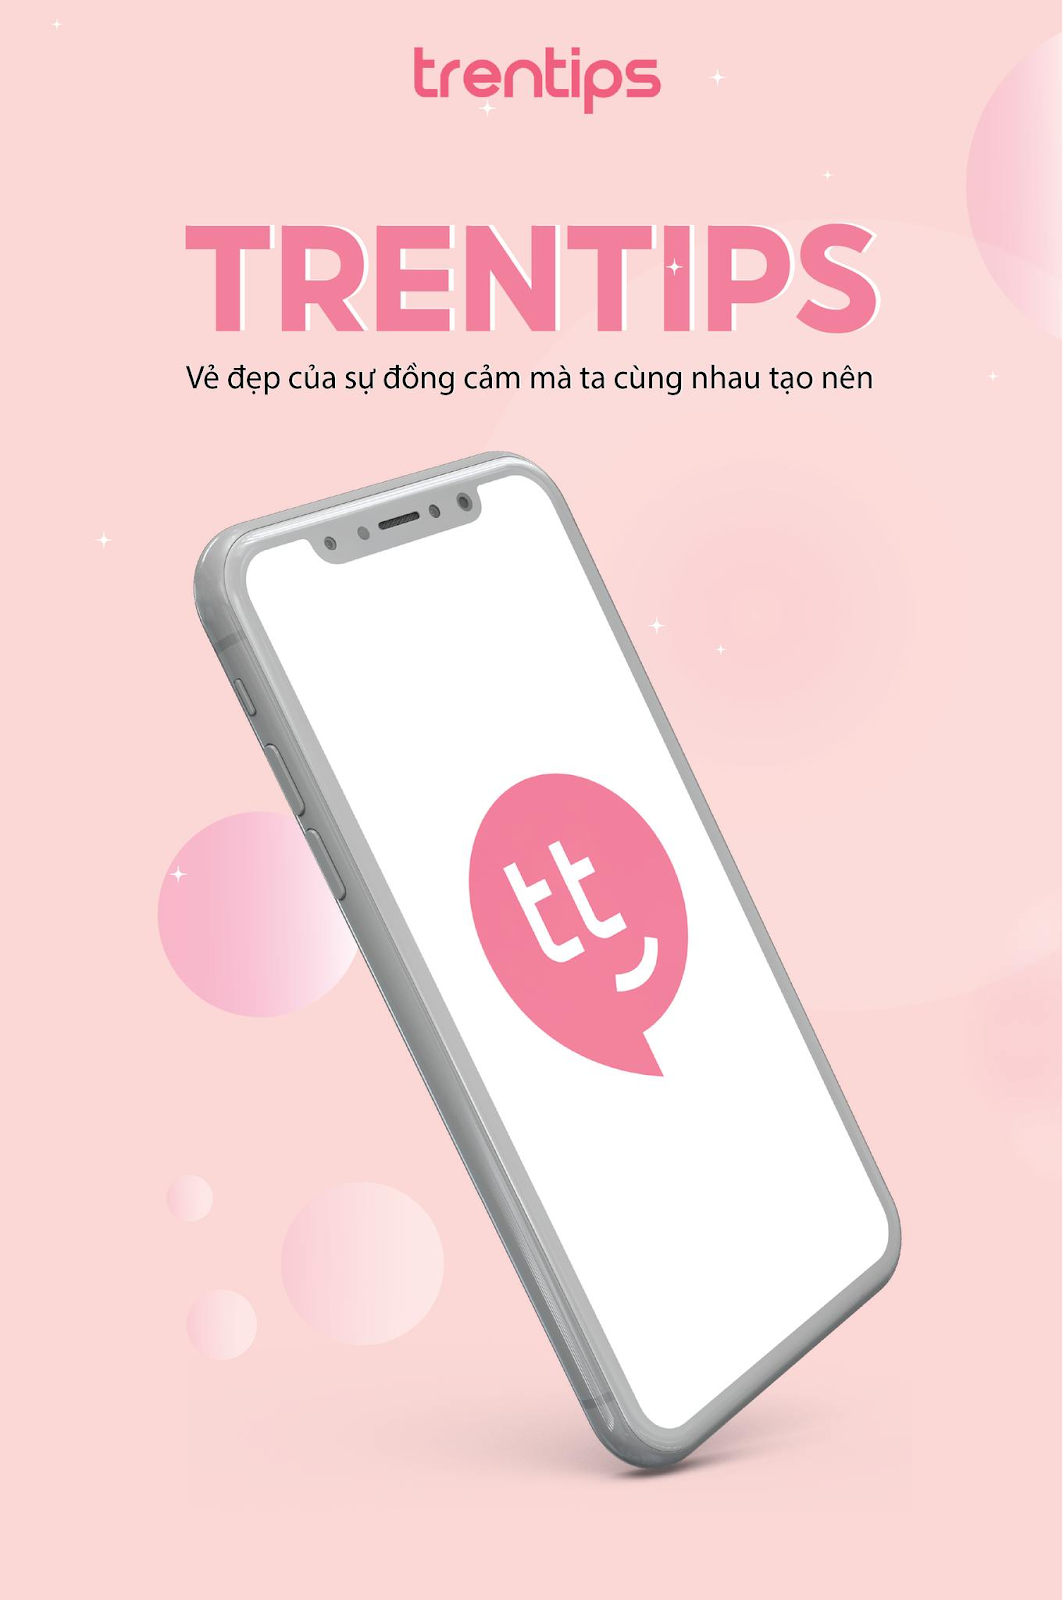 reviewmypham - Mẹo vặt làm đẹp: Đánh giá app Trentips. Có nên tải Trentips về điện thoại không? 25k6bUrMsU1UtaOB4aCuxl5mnj6NpMf2ZTeJfk5vzvX1x4opZ0YksX4UuyV4HOo7H-mOTQpZh8xepqfmPT_v5x3zF3oCuk7UUT6L2x68KShSarJy3XAYSXKw2aSYklqWg6msyHzq5yvkRublxOgnyeTSp8yf5WQrY4vVNuXgTv6zbBysAop6zjsSpA